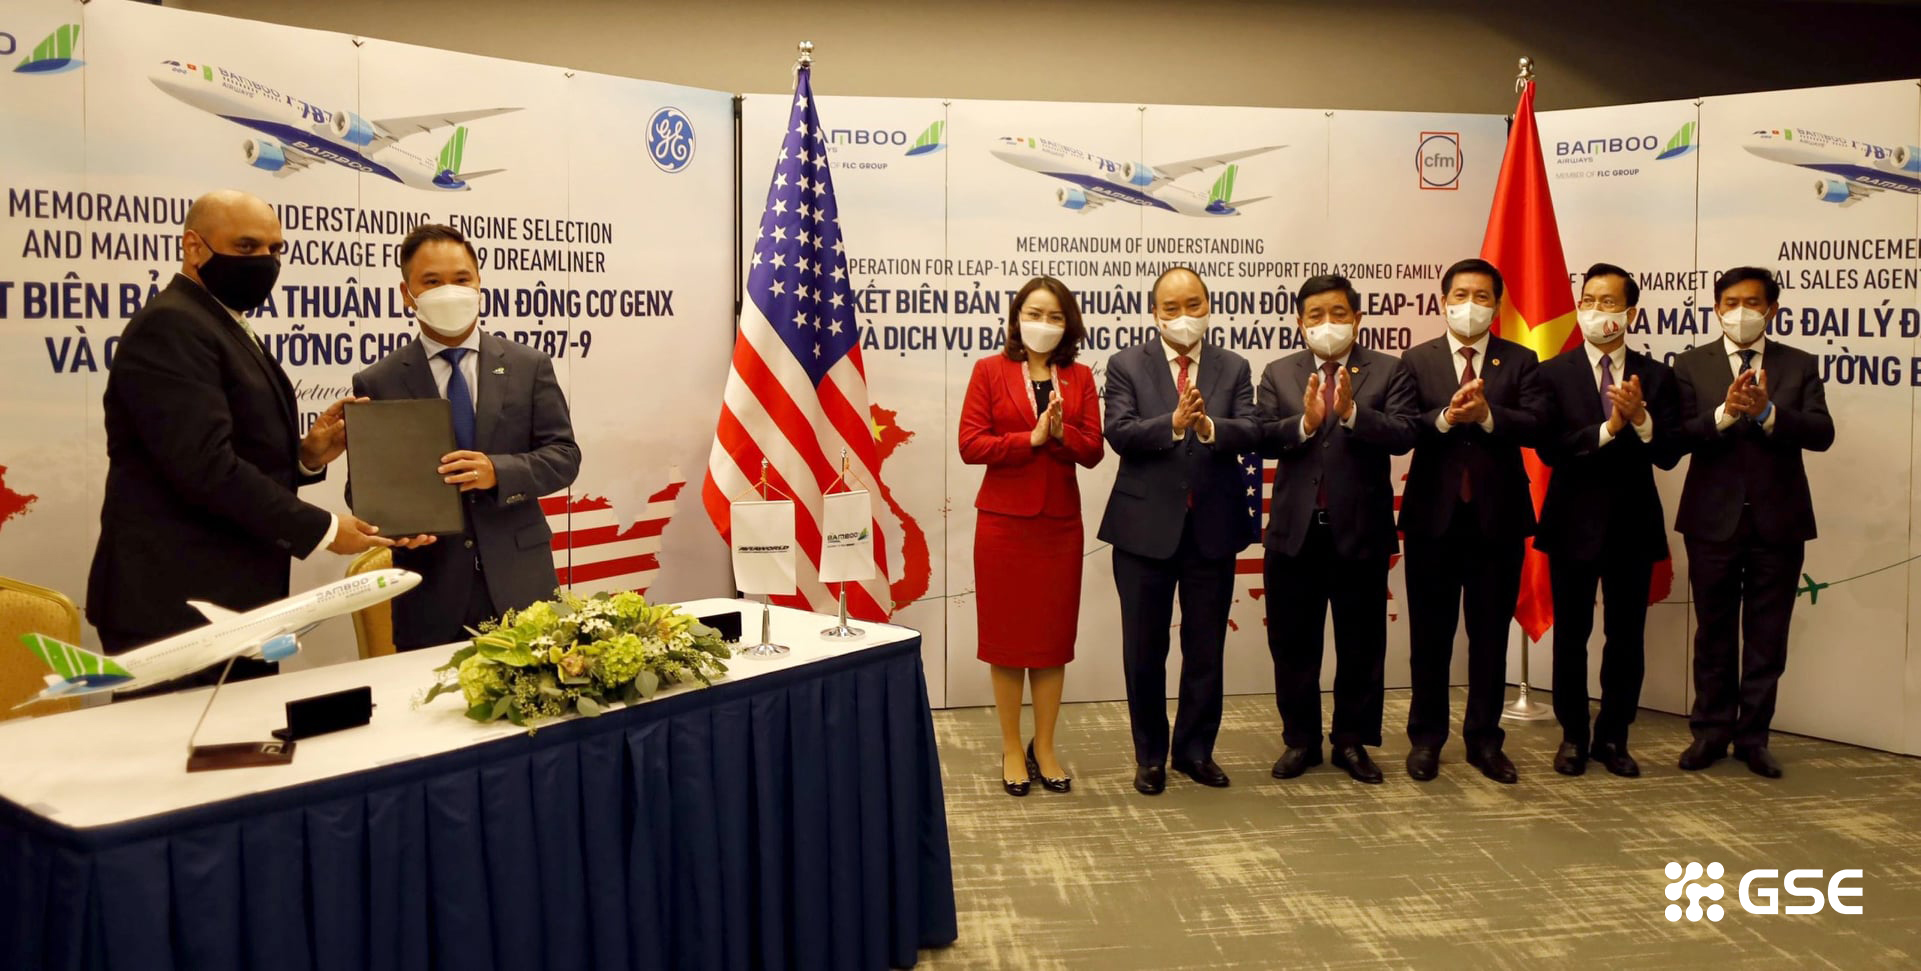 Bamboo airway với đường bay thẳng từ Việt Nam đến Hoa Kỳ lễ ký kết - Bamboo Airways và đường bay thẳng từ Việt Nam đến Hoa Kỳ